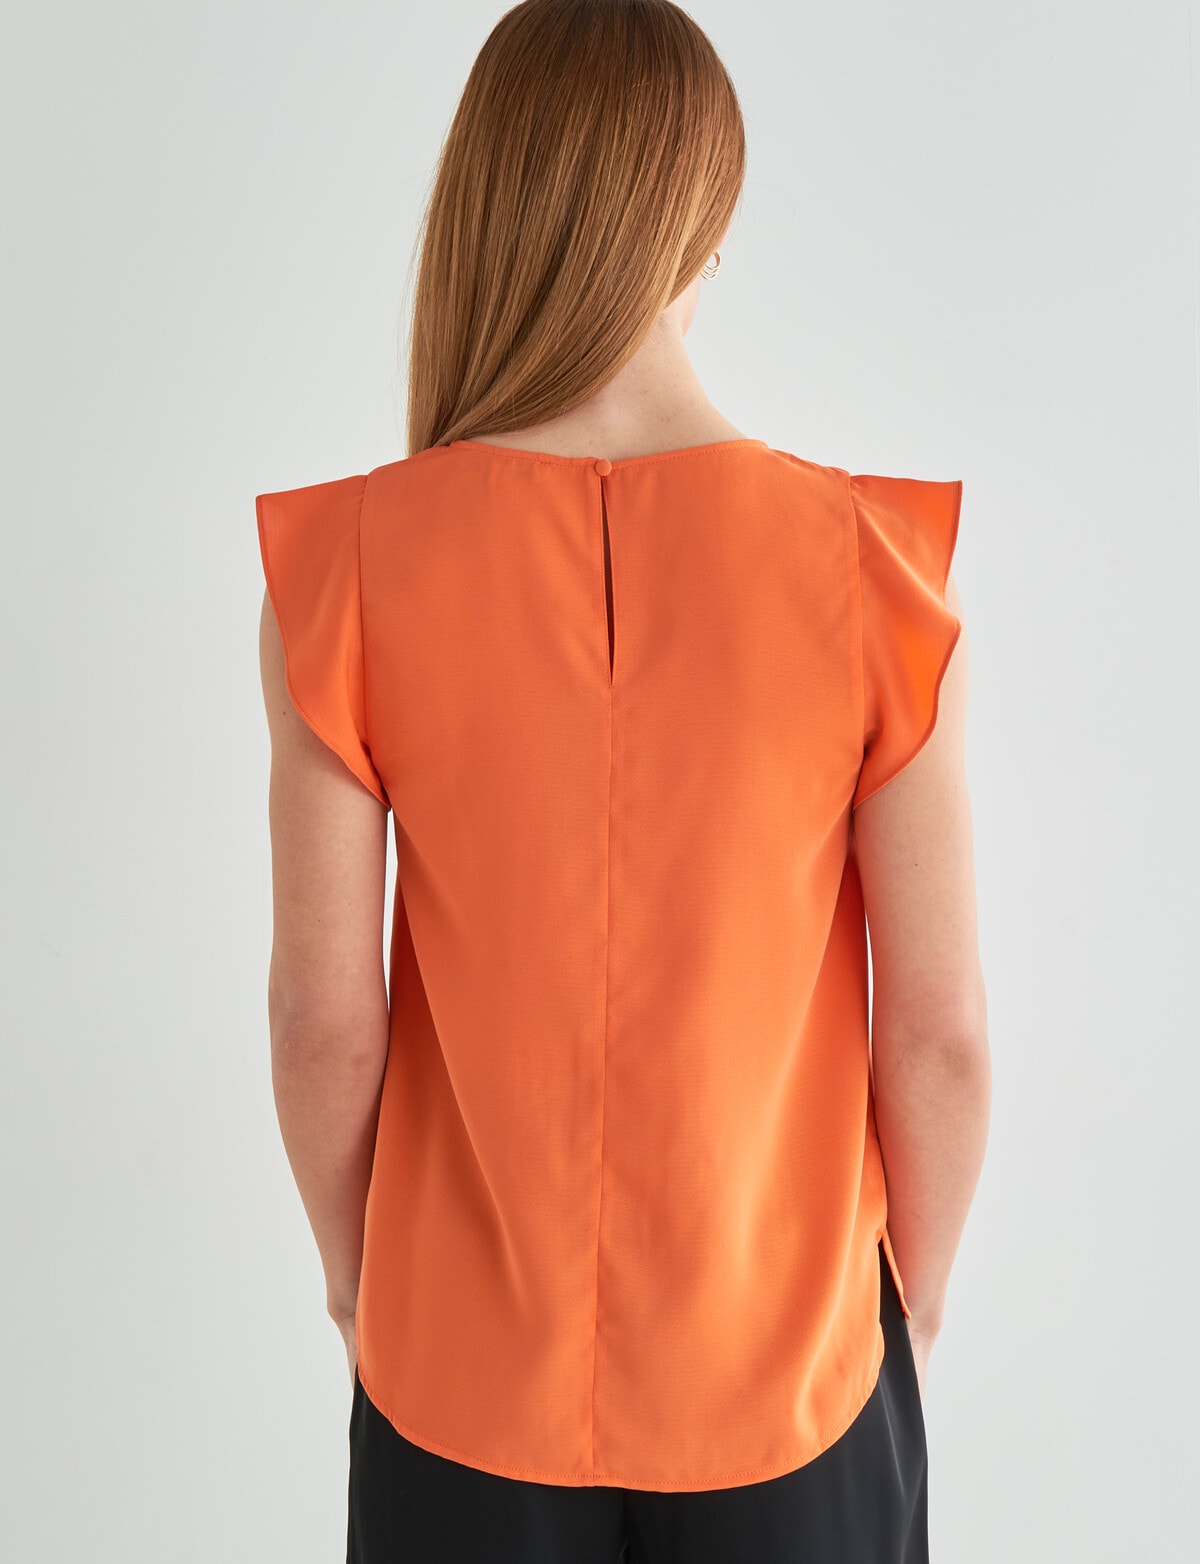 Top, Short - V-Neck Shell Tops Oliver Orange Sleeve Black